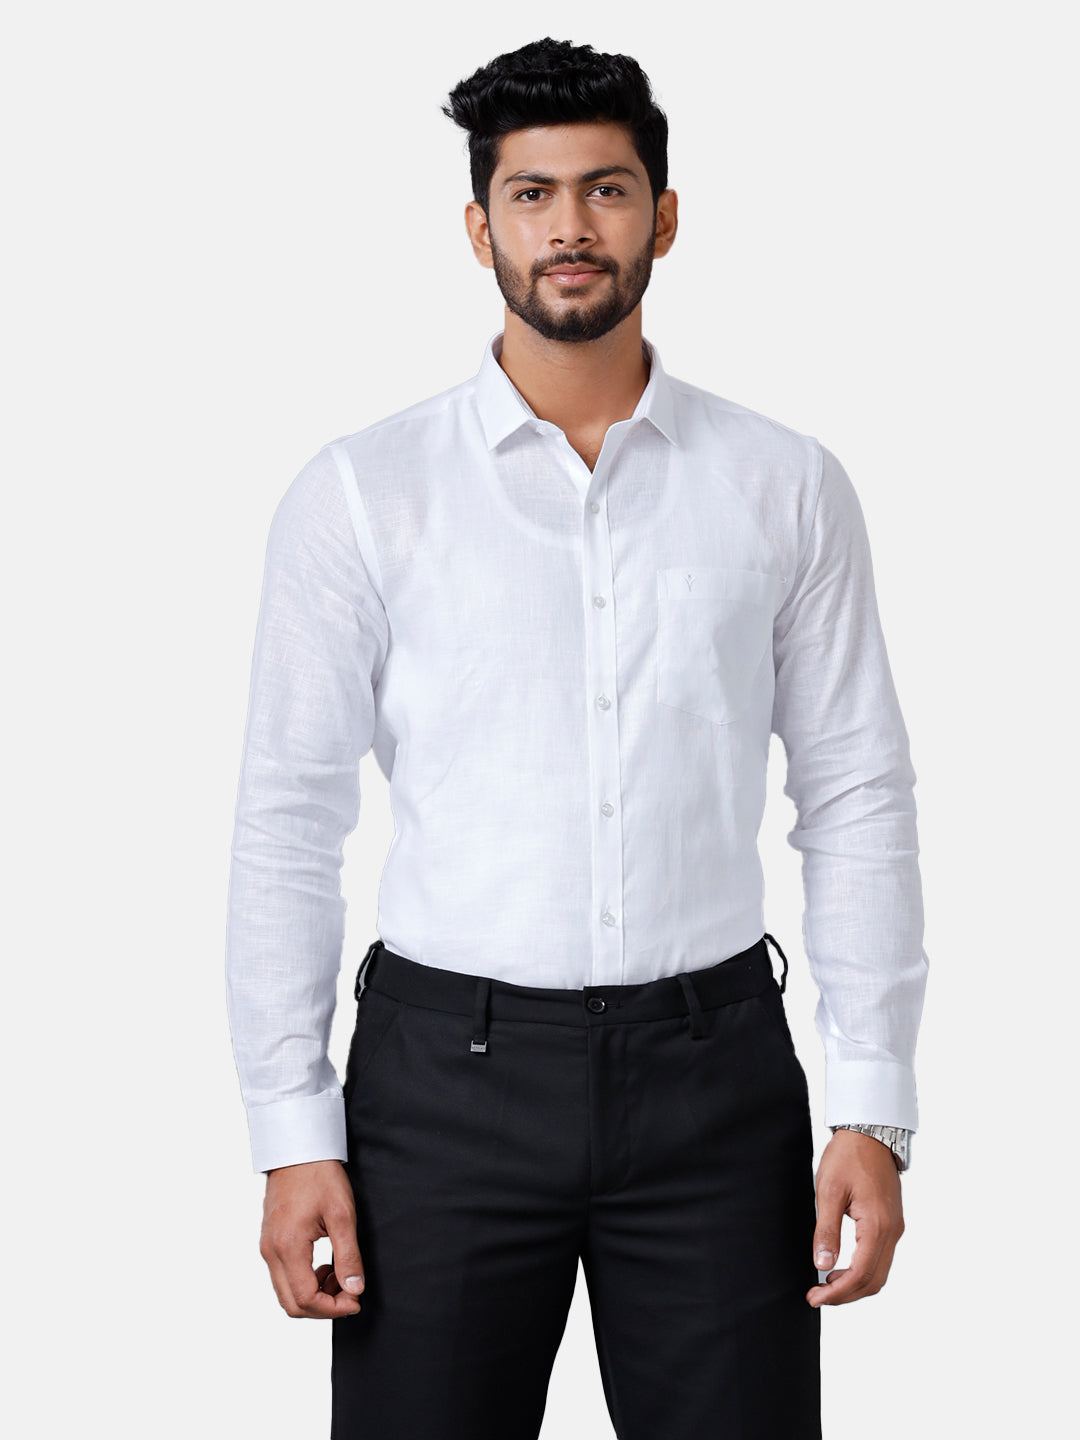 Mens Pure Linen White Shirt 5100